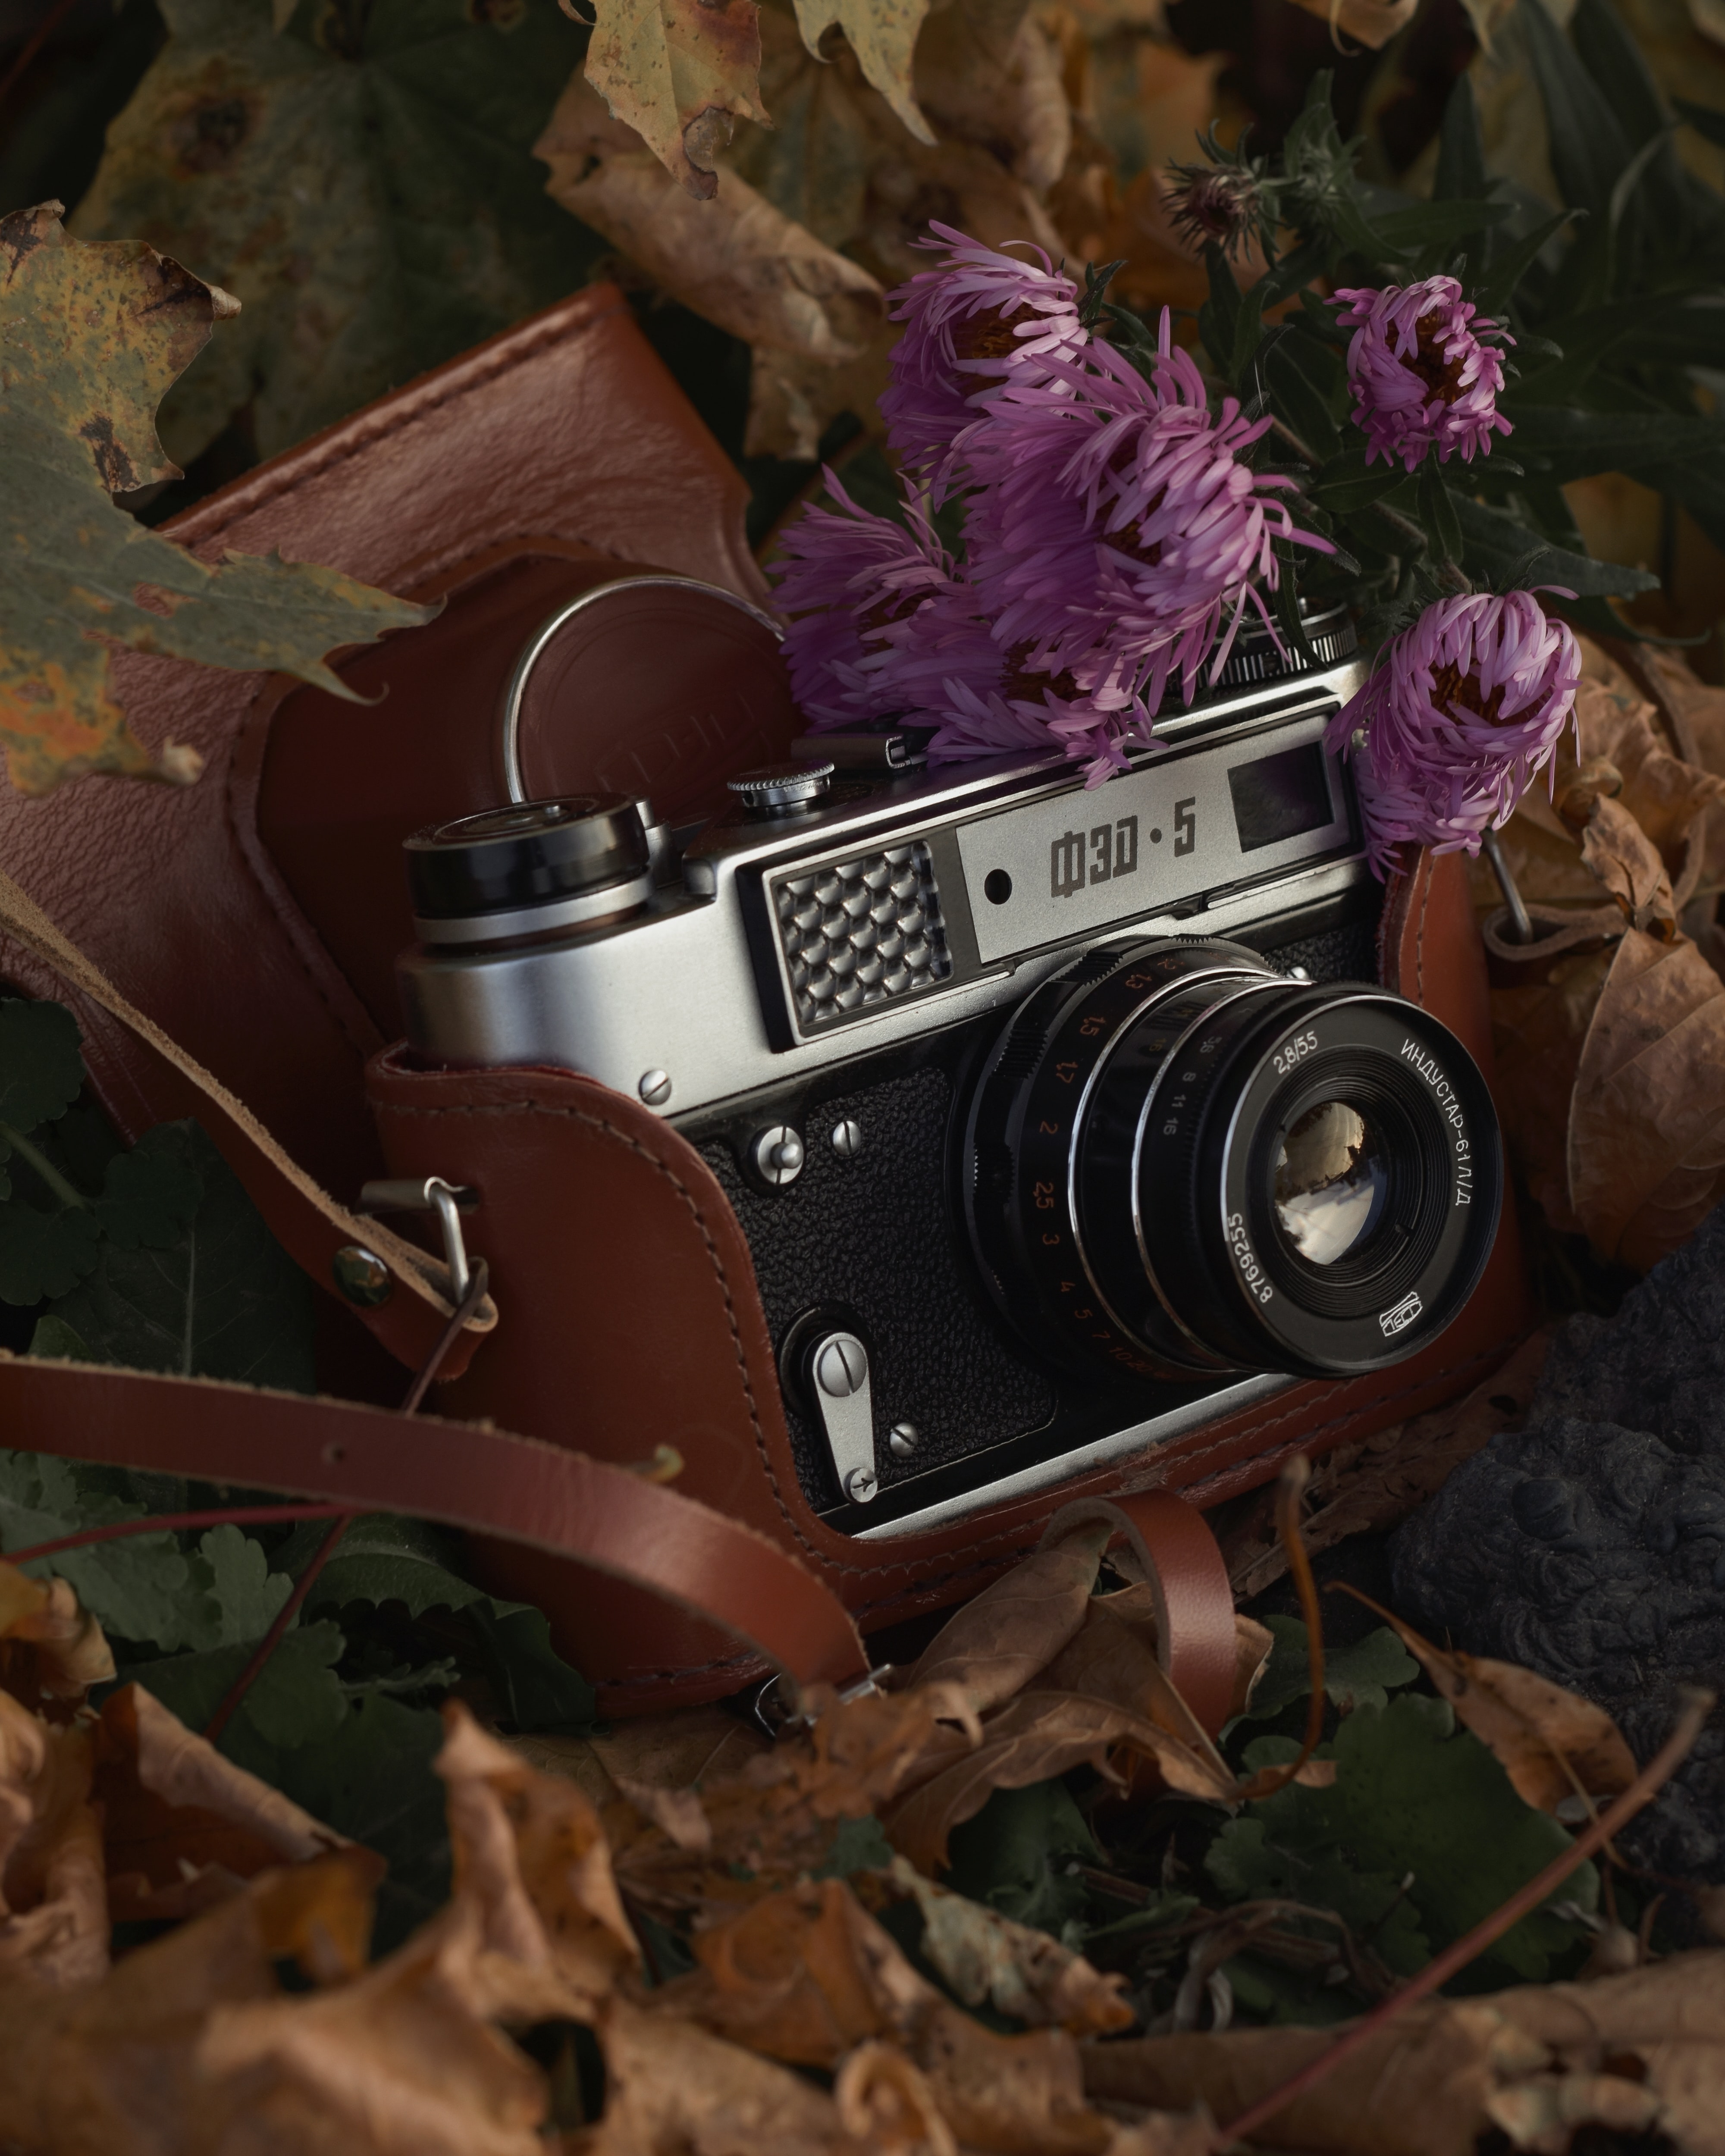 autumn, miscellanea, miscellaneous, vintage, foliage, retro, lens, camera QHD